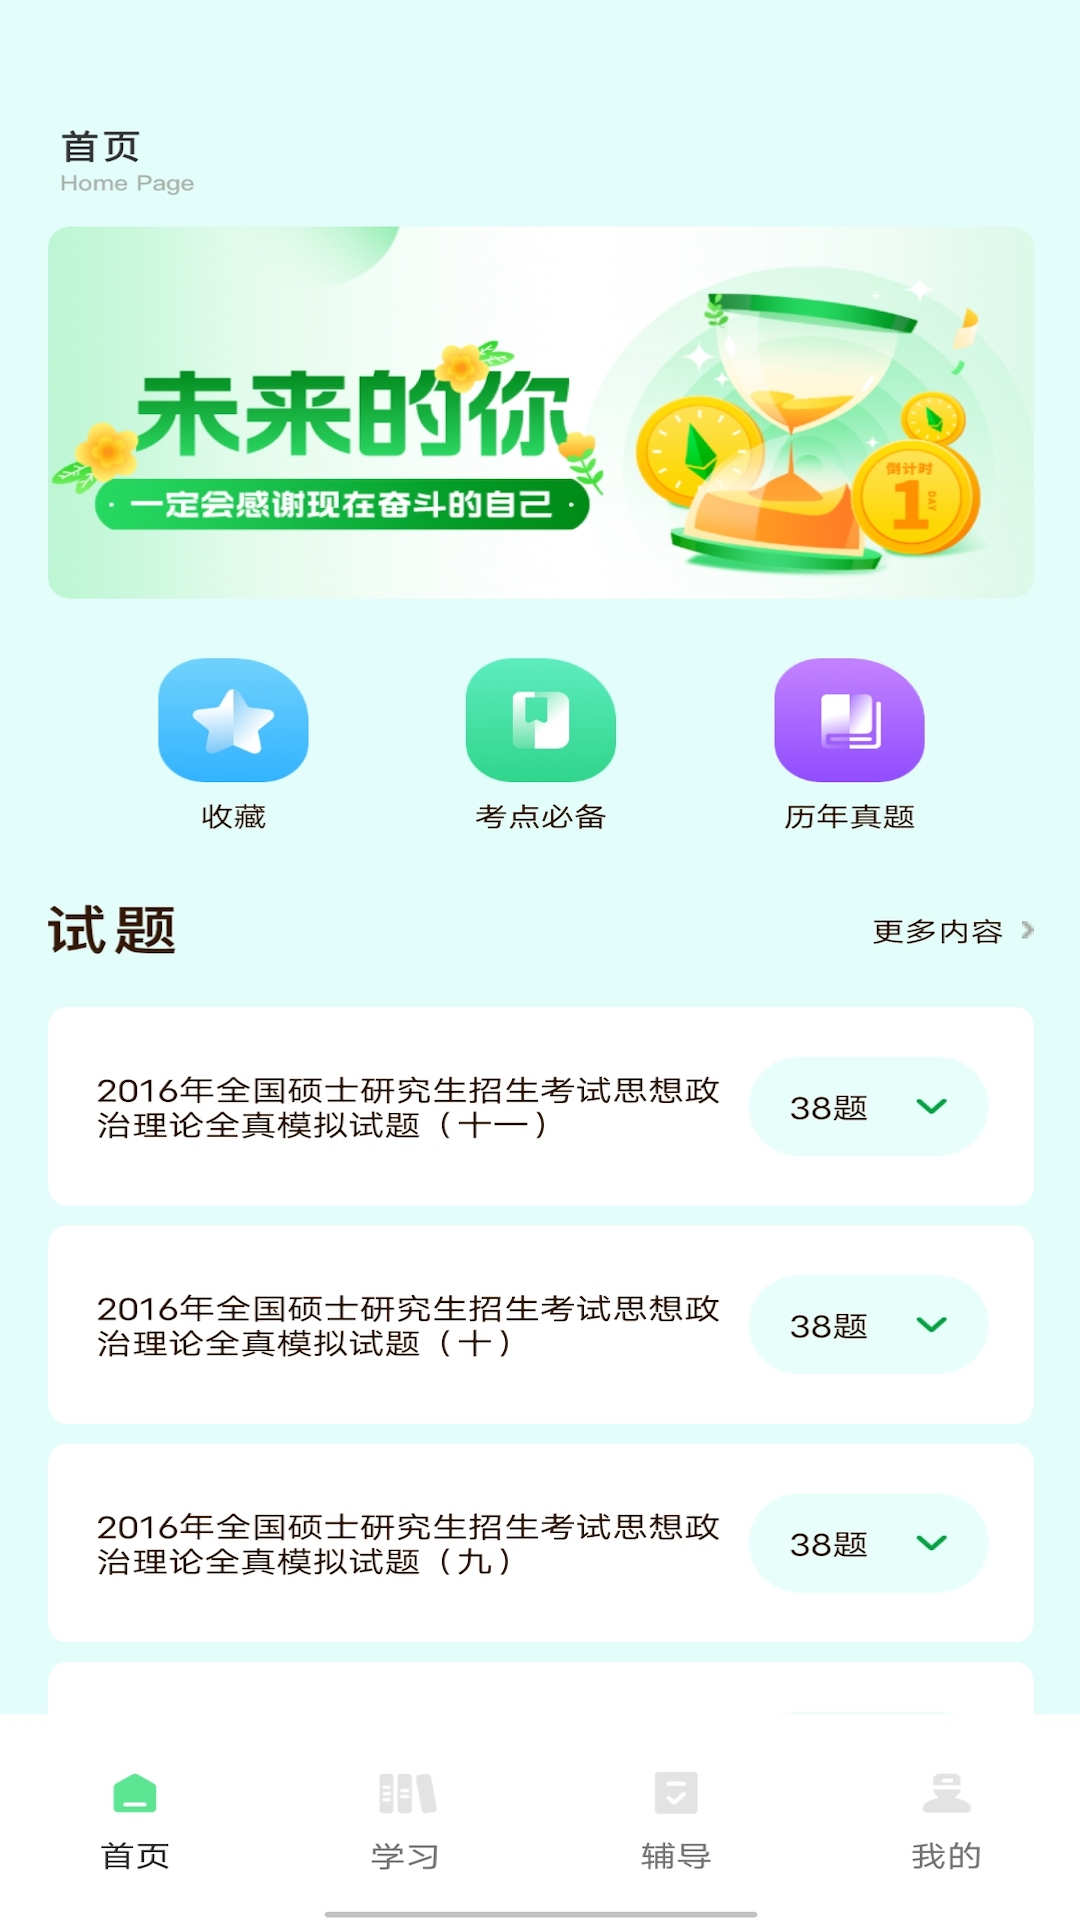 博翼柠檬文才学堂app下载,博翼柠檬文才学堂app官方版 v1.0.0